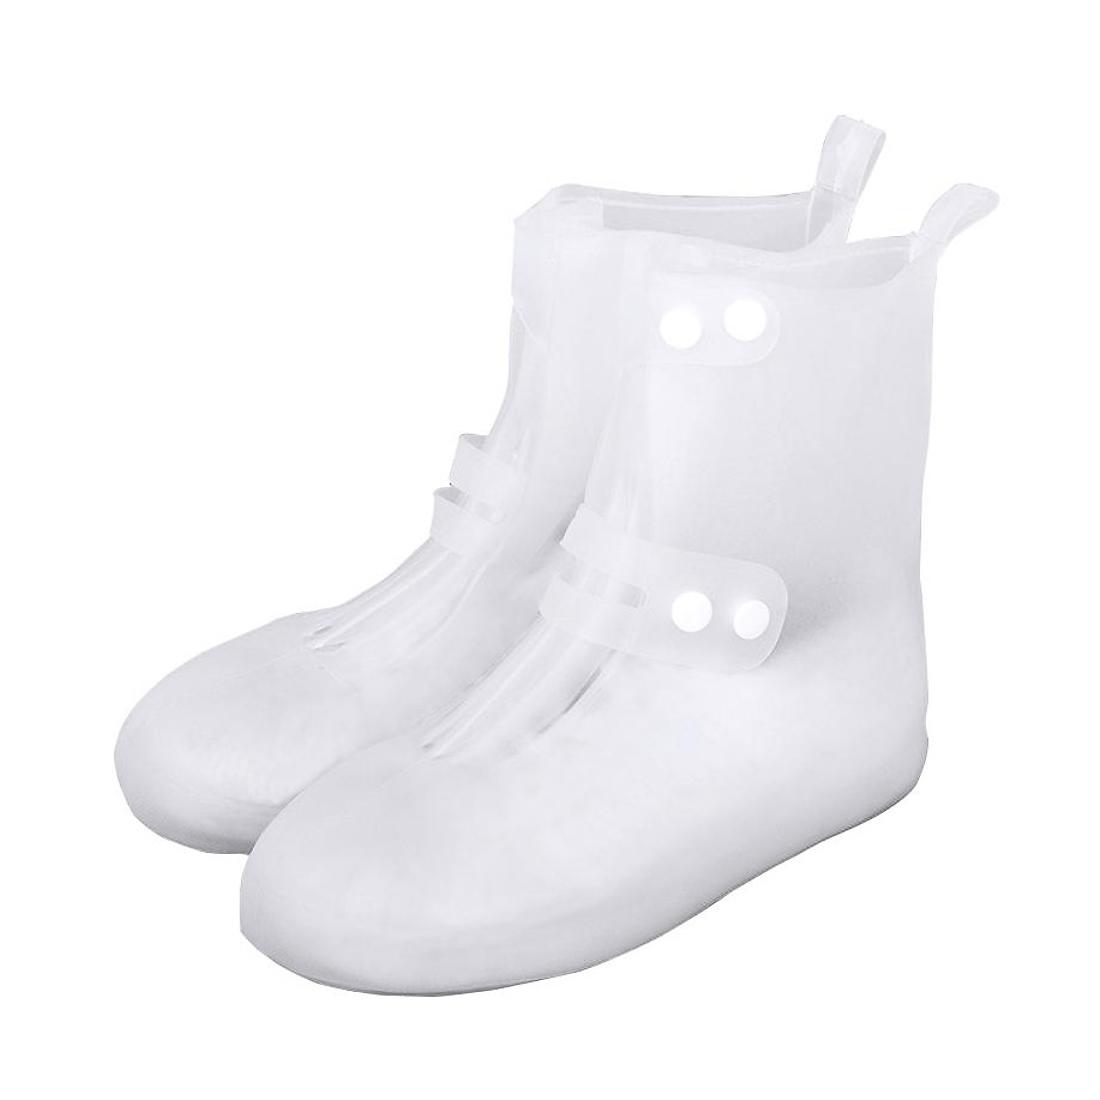 Cиликоновые чехлы-бахилы для обуви с застежкой XL 44-45 CG WSS3 White